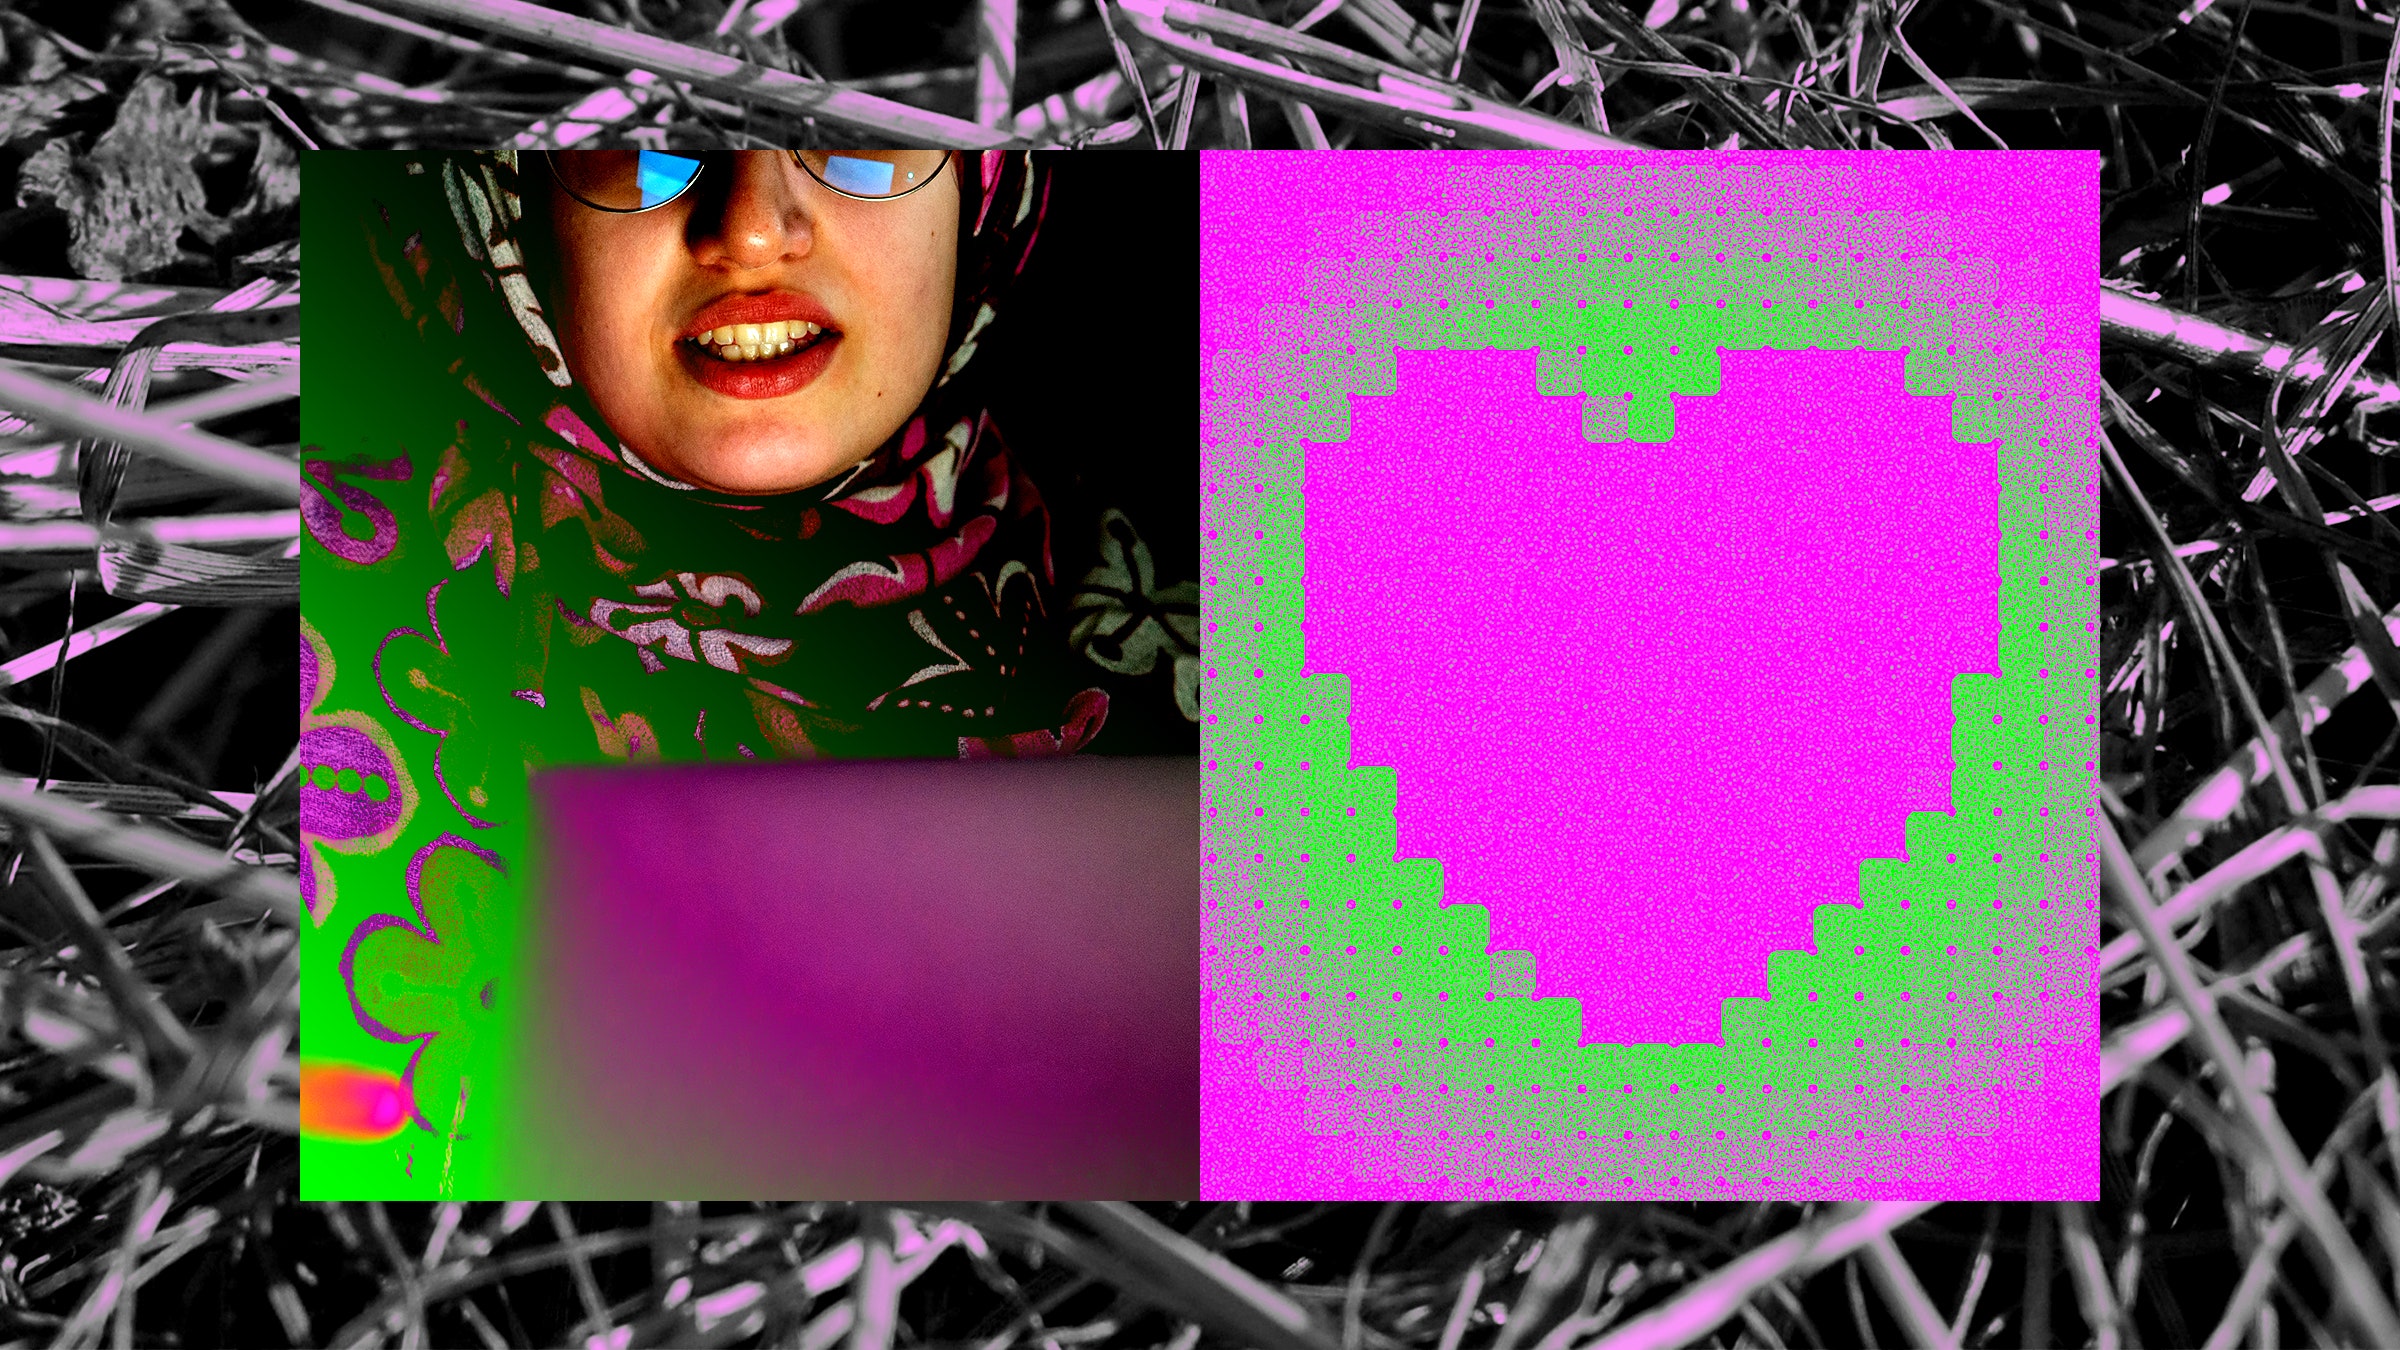 Uma colagem representando uma pessoa em um hijab, olhando para um computador, um coração luminoso e agulhas em um palheiro